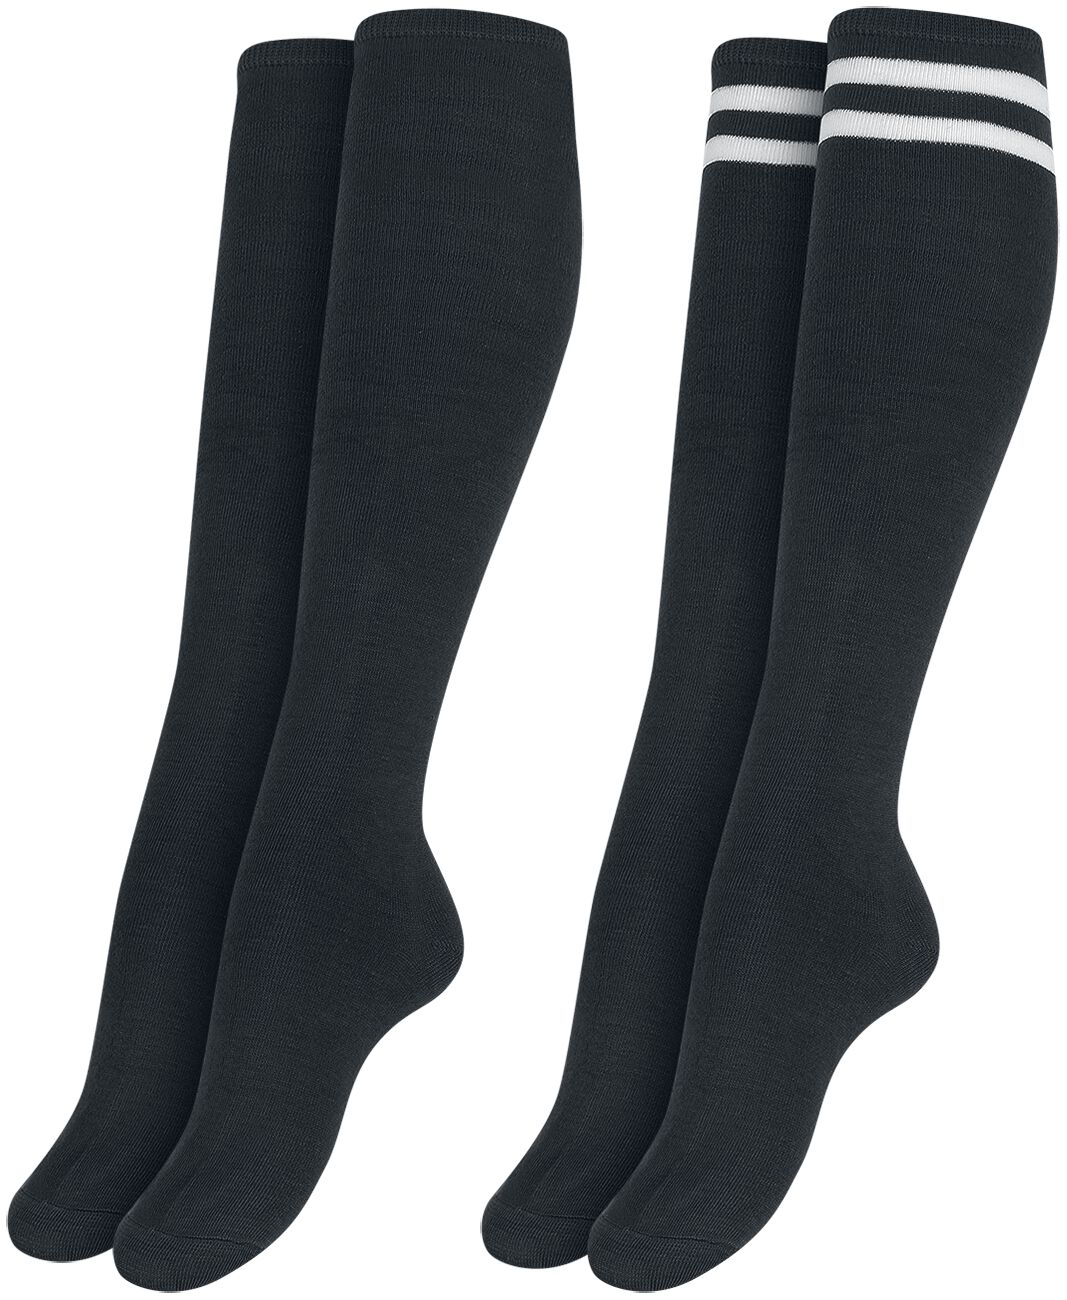 Urban Classics Ladies College Socks 2-Pack Kniestrümpfe schwarz in EU 39-42